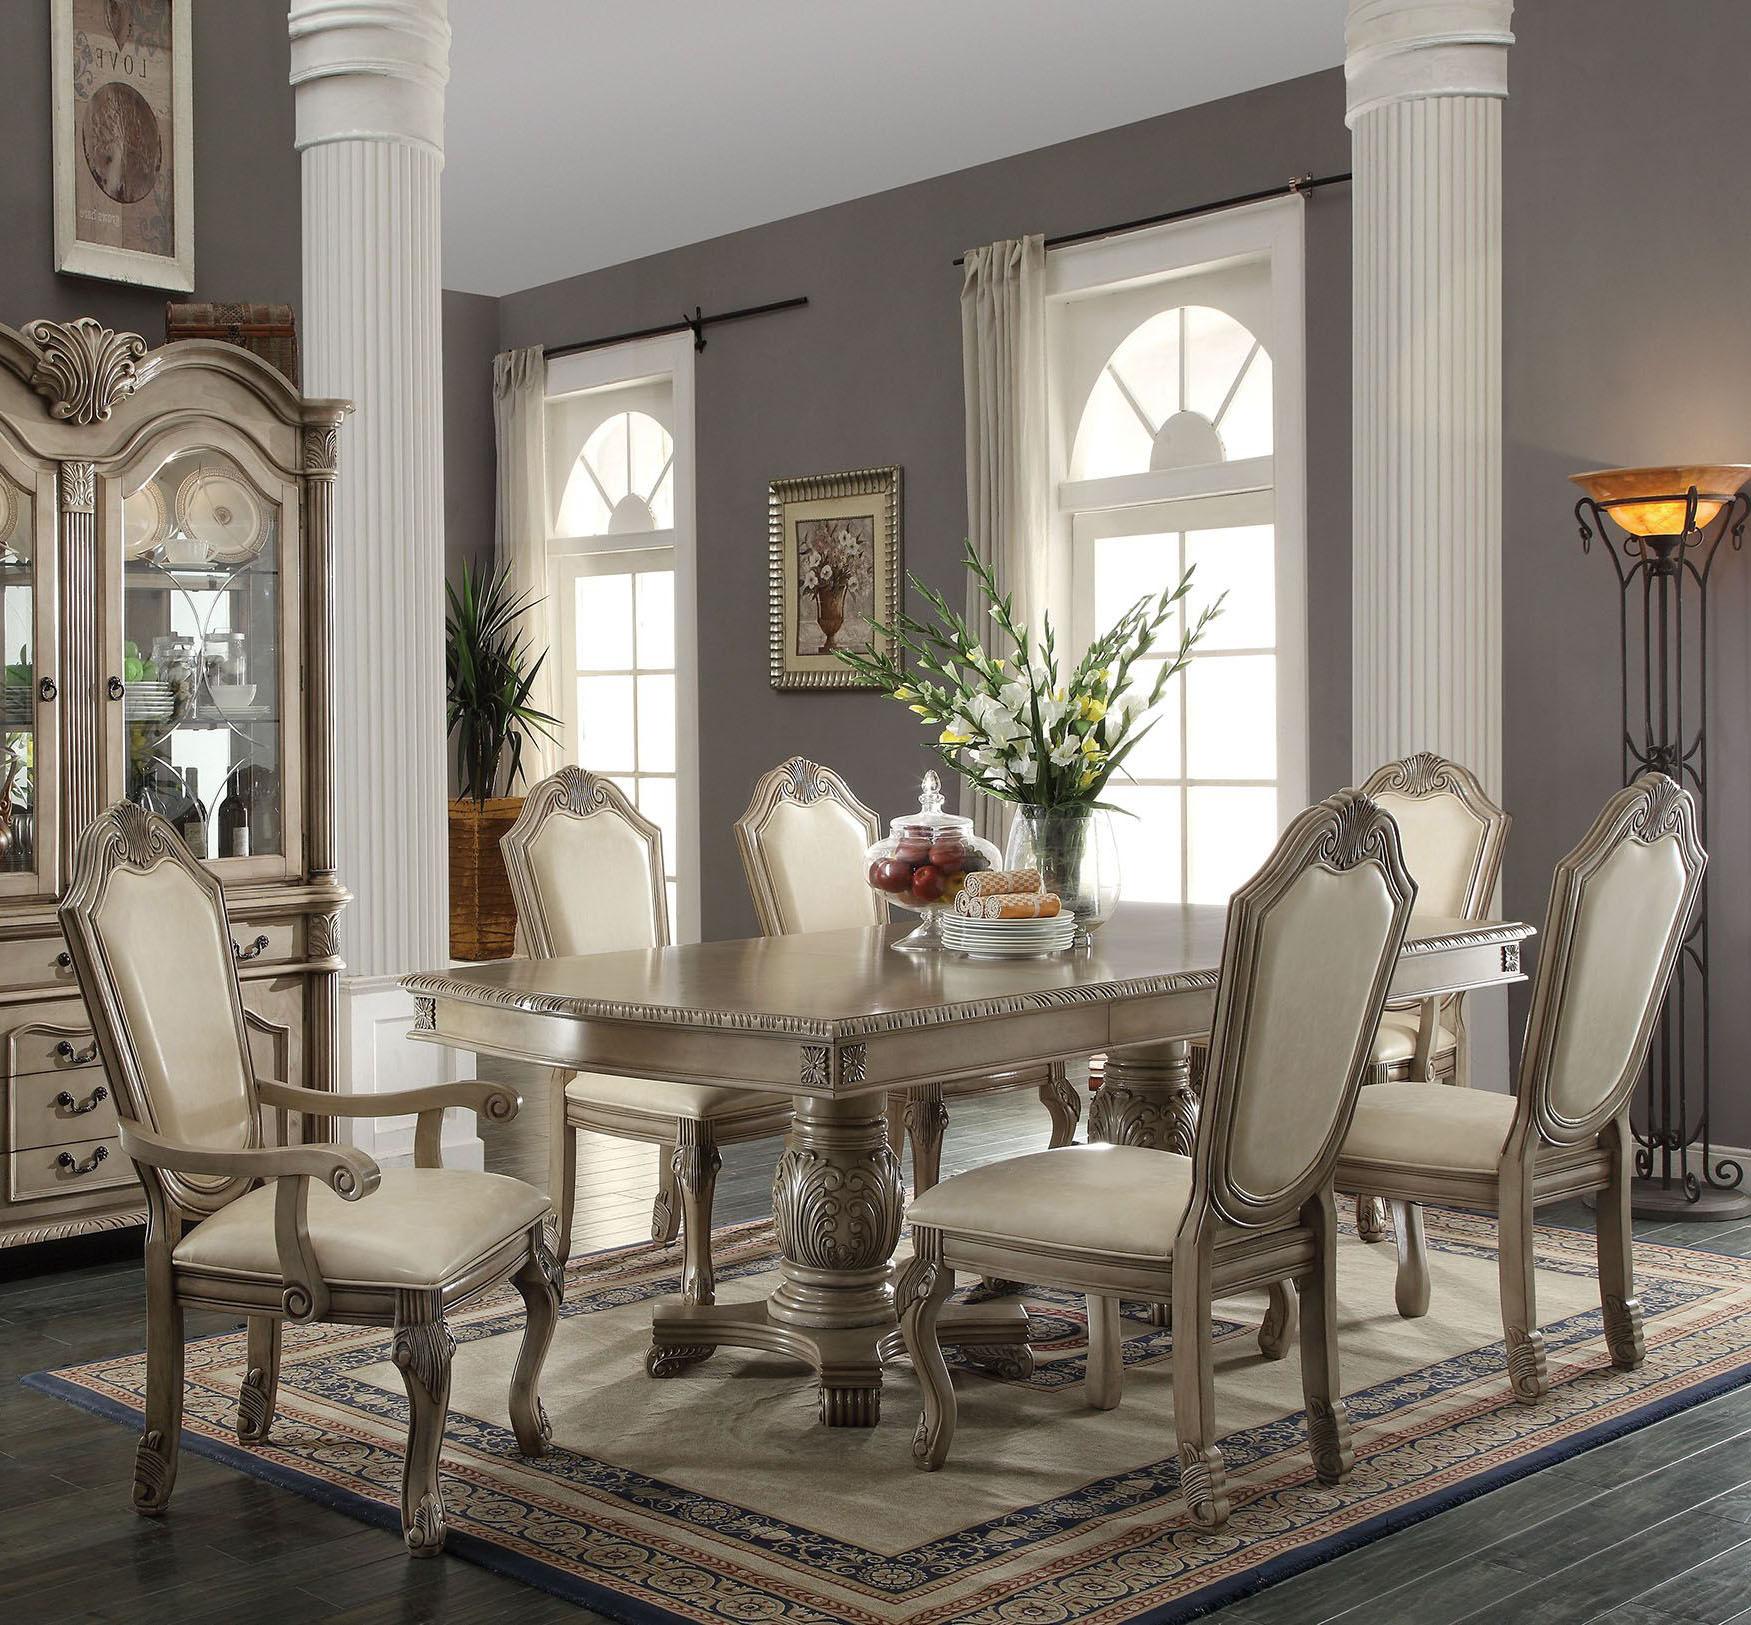 Classic, Traditional Dining Table Set Chateau De Ville-64065 Chateau De Ville-64065-Set-7 in Antique White Chenille